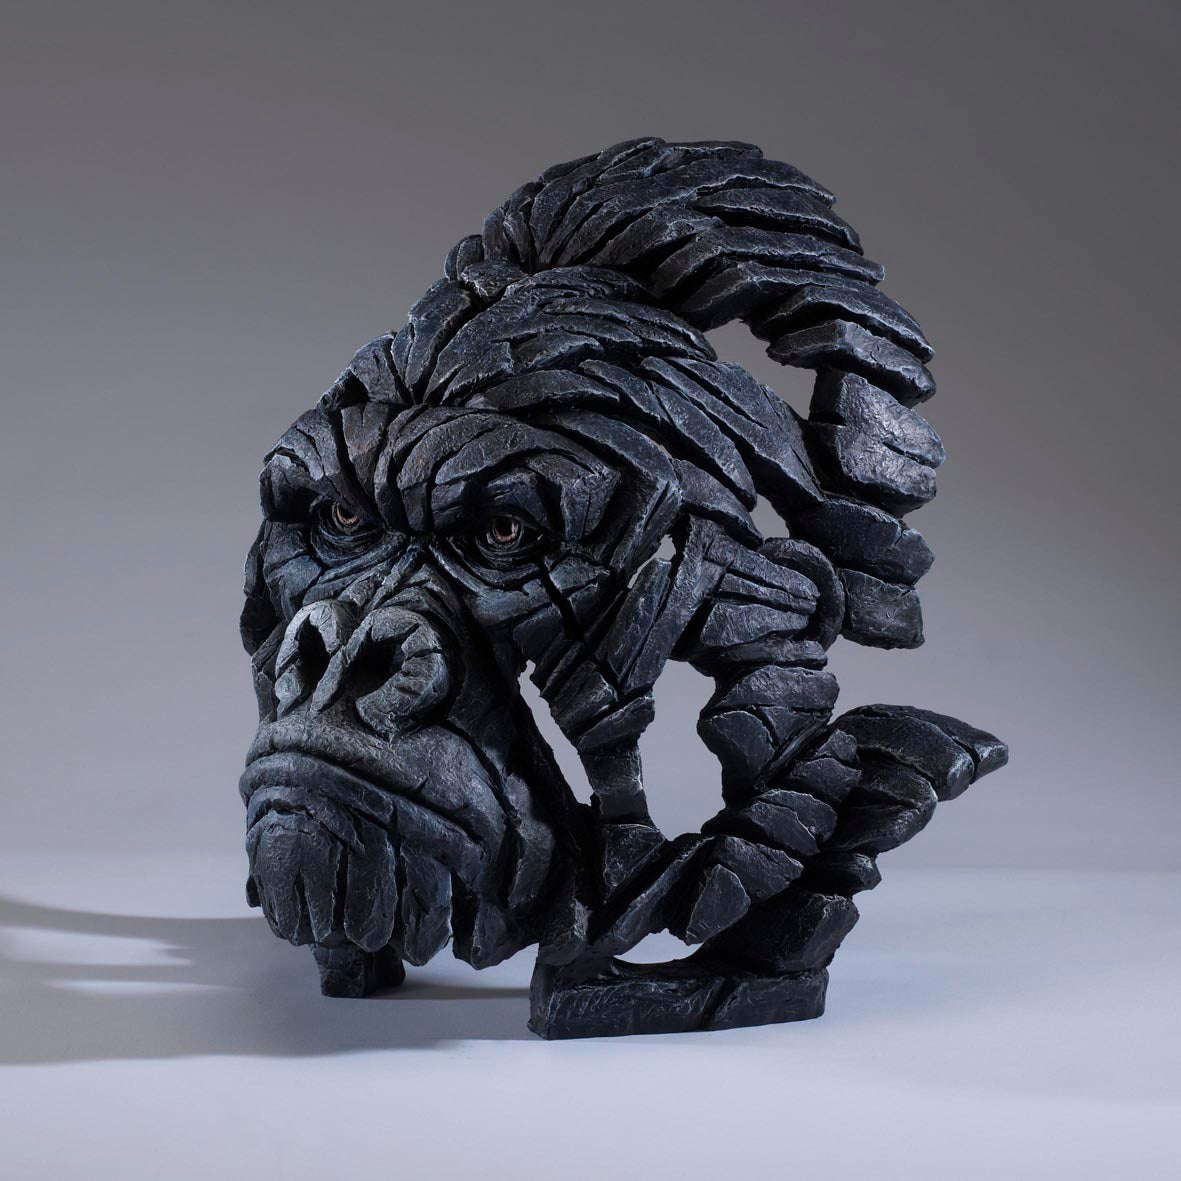 Edge Sculpture Gorilla Bust by Matt Buckley